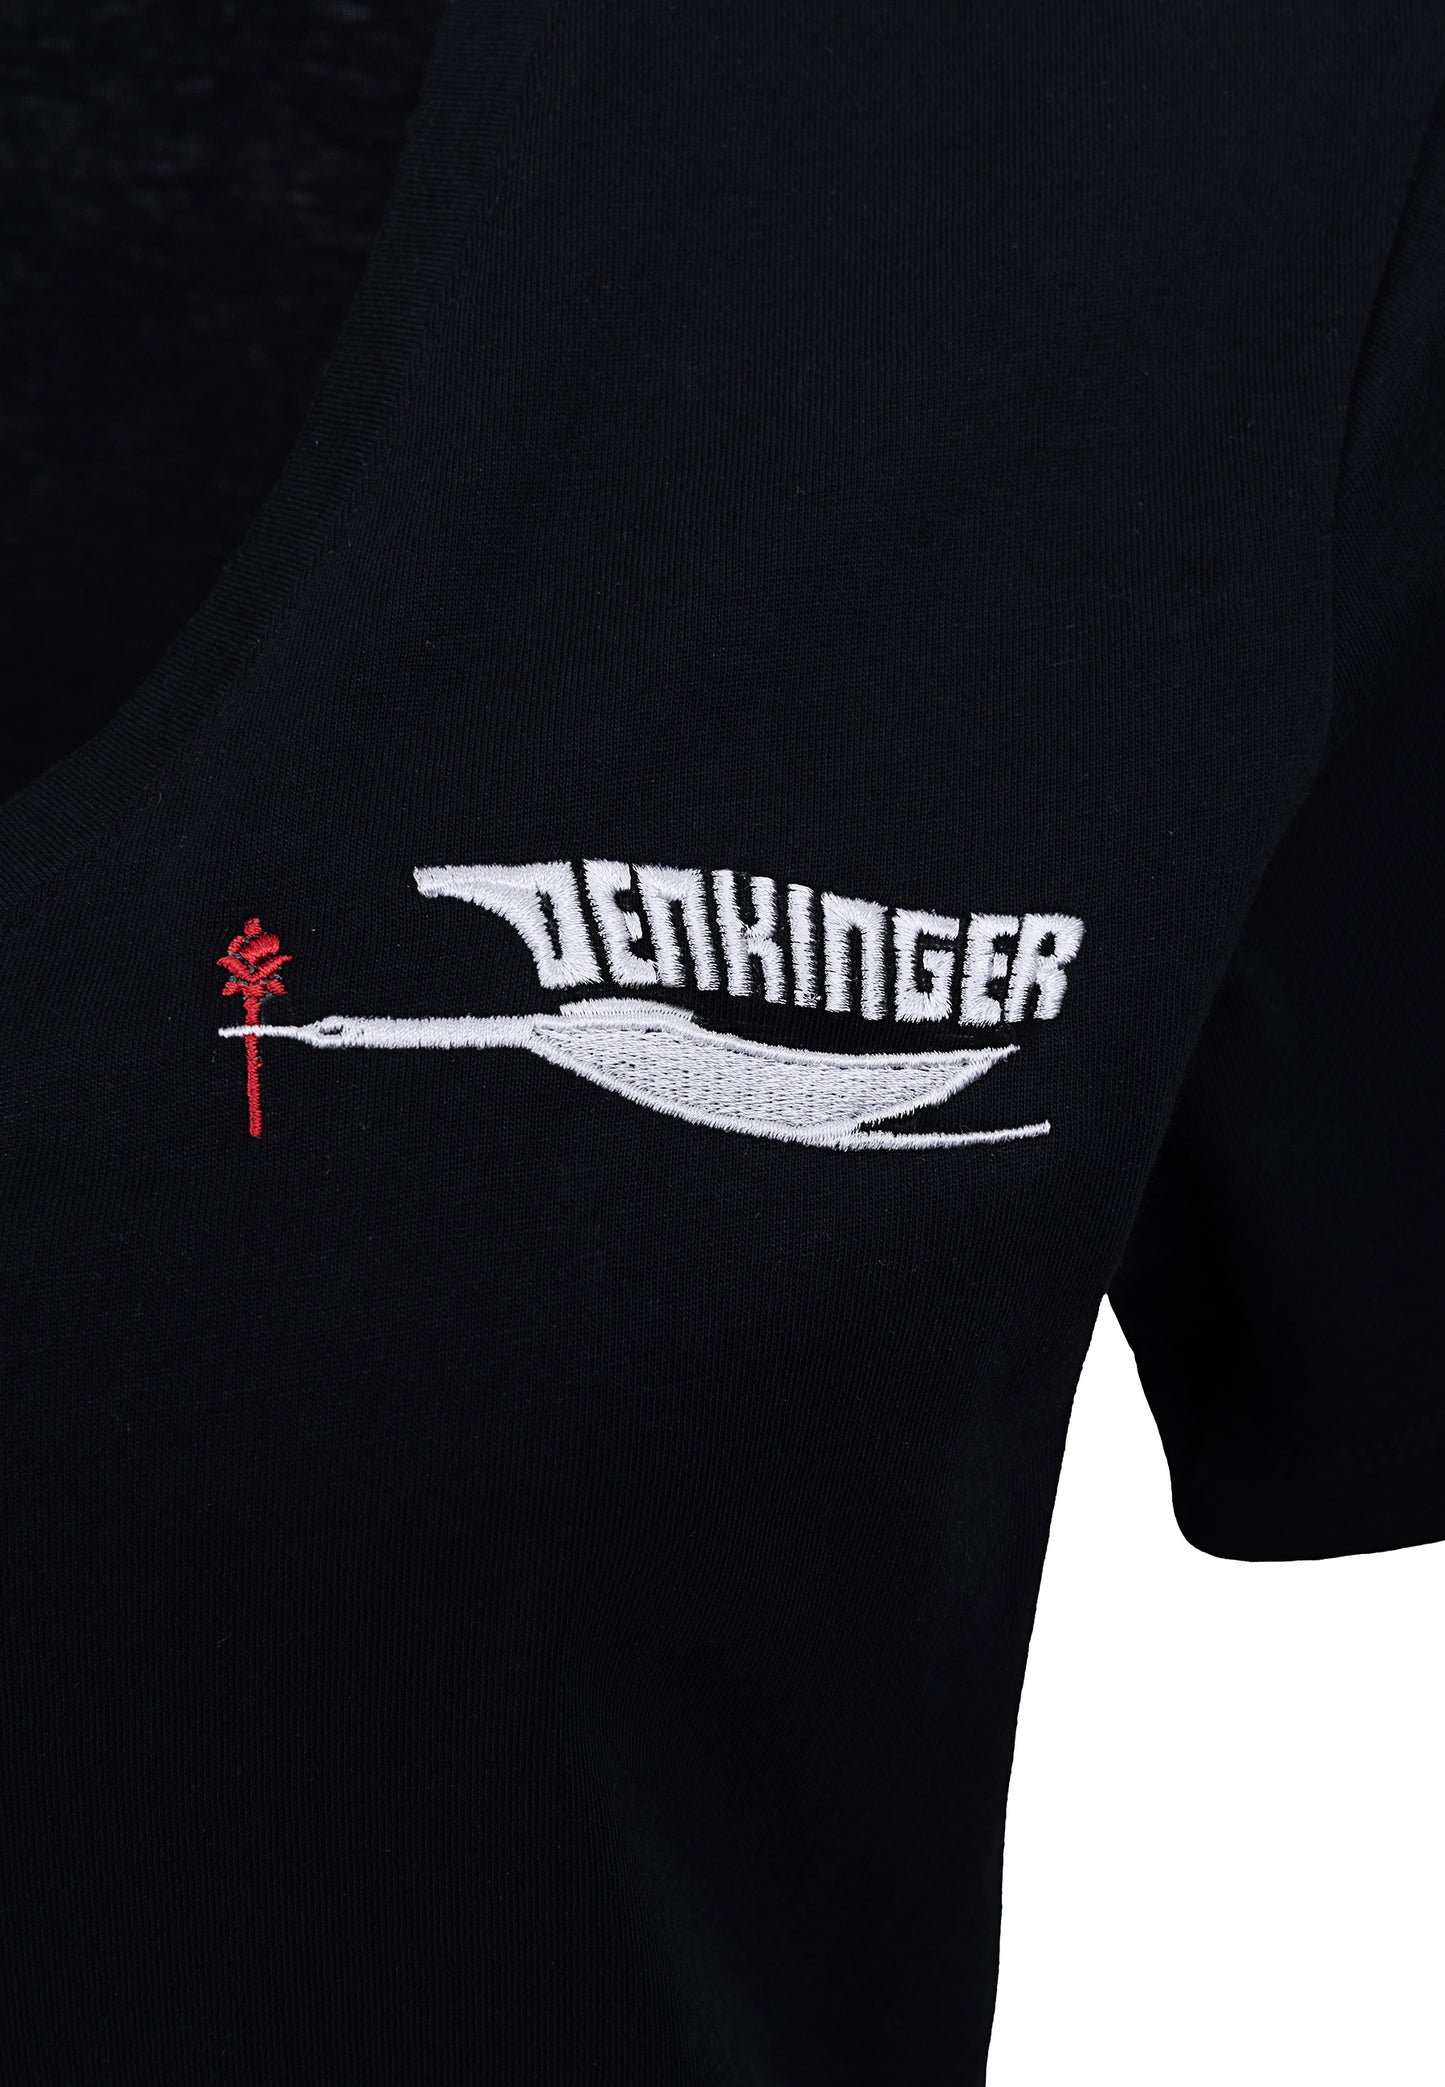 DENKINGER V-Shirt Women